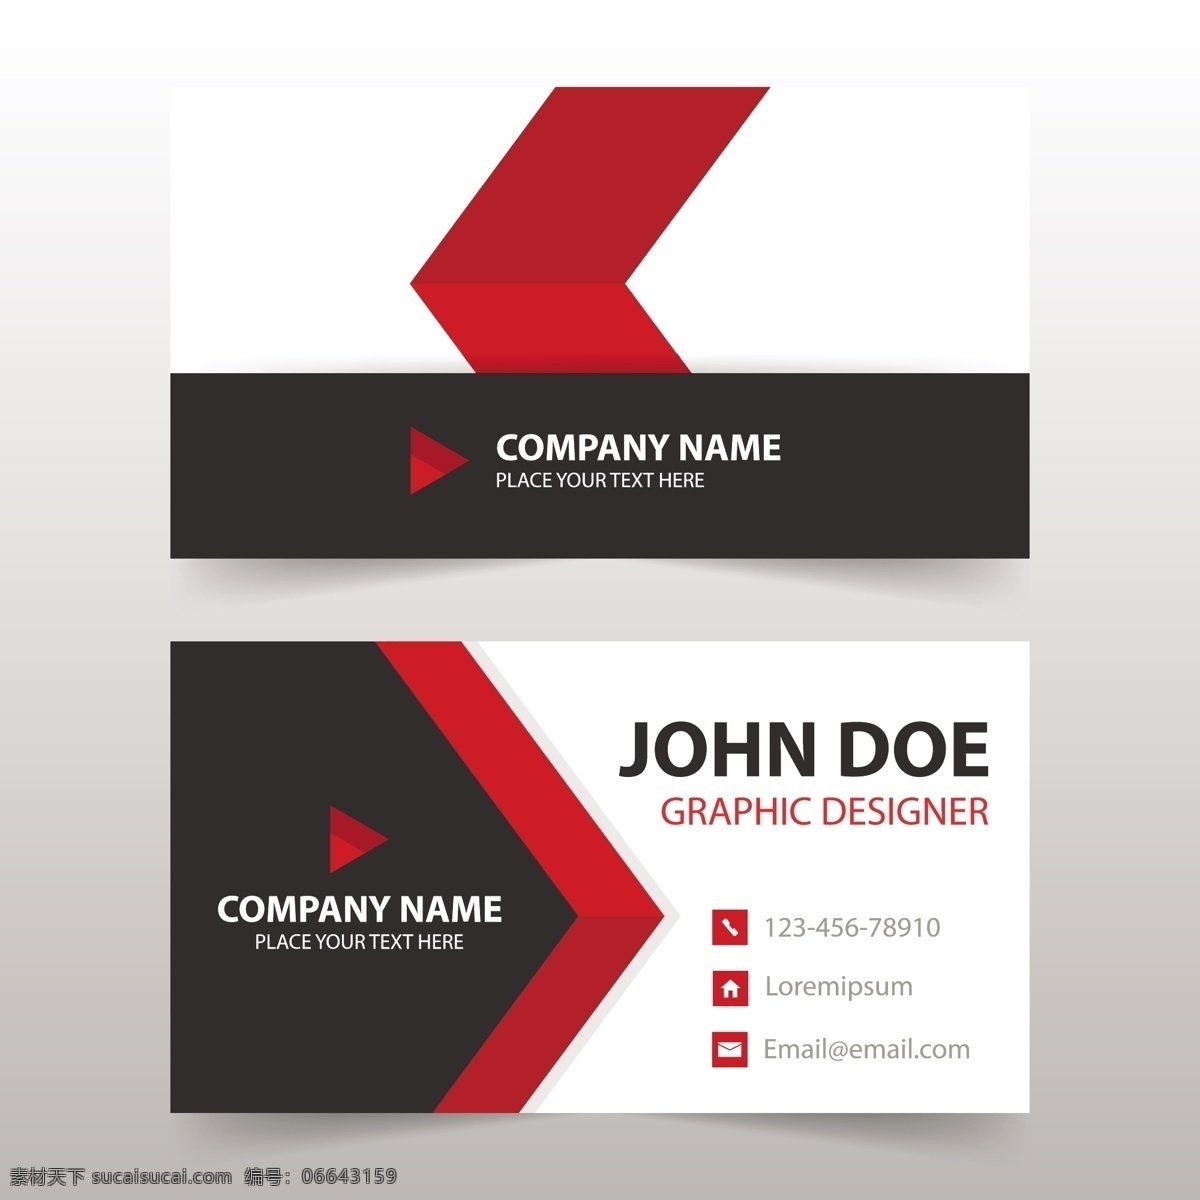 名片模板设计 标志 名片 商务 抽象 办公 模板 红色 演示 企业 公司 抽象标志 现代 文具 企业身份 身份 颜色 身份证 商务标志